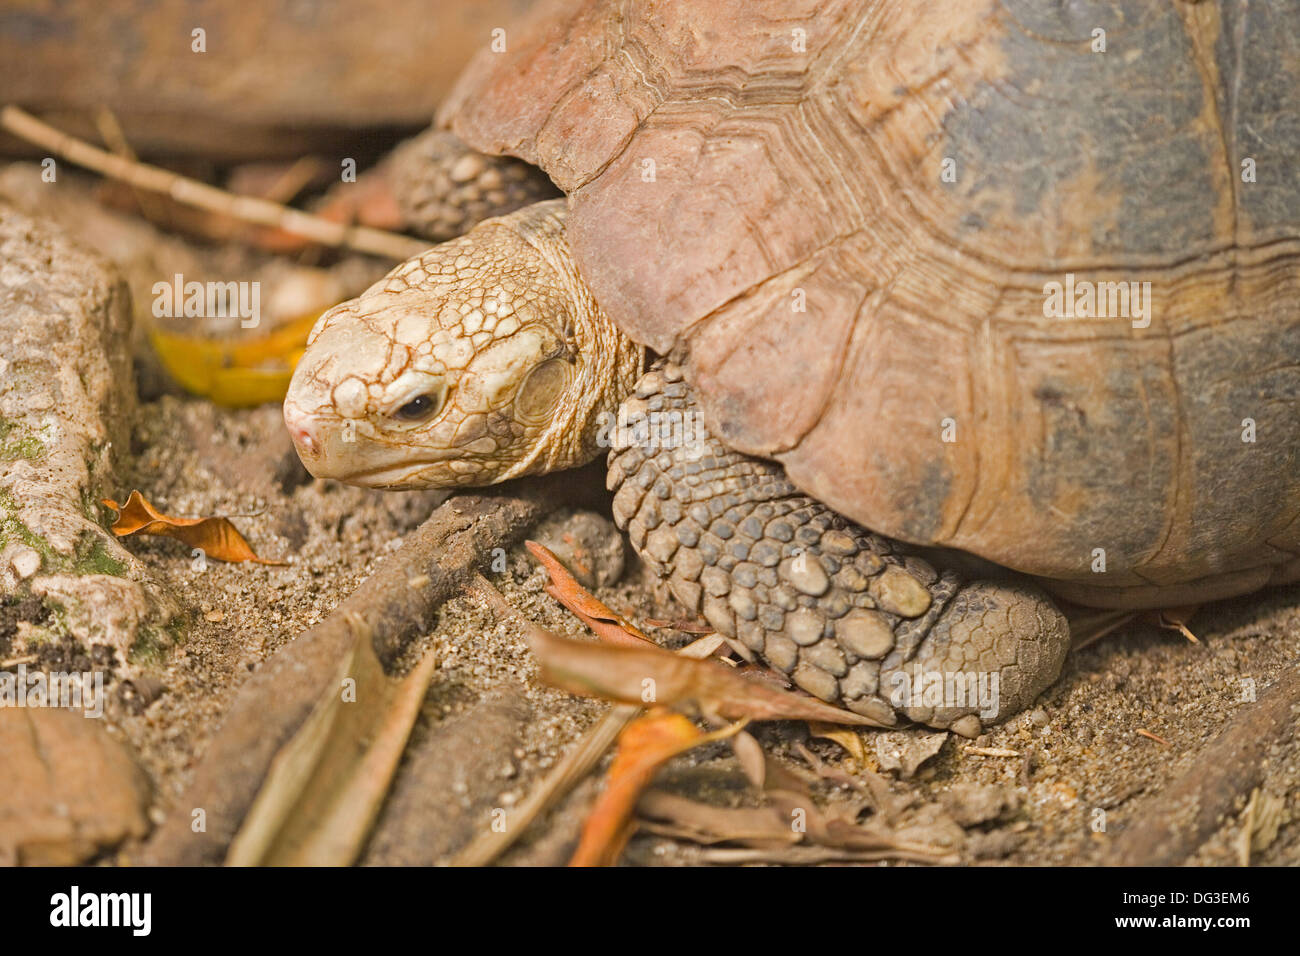 Tortoise elongated tortoises for